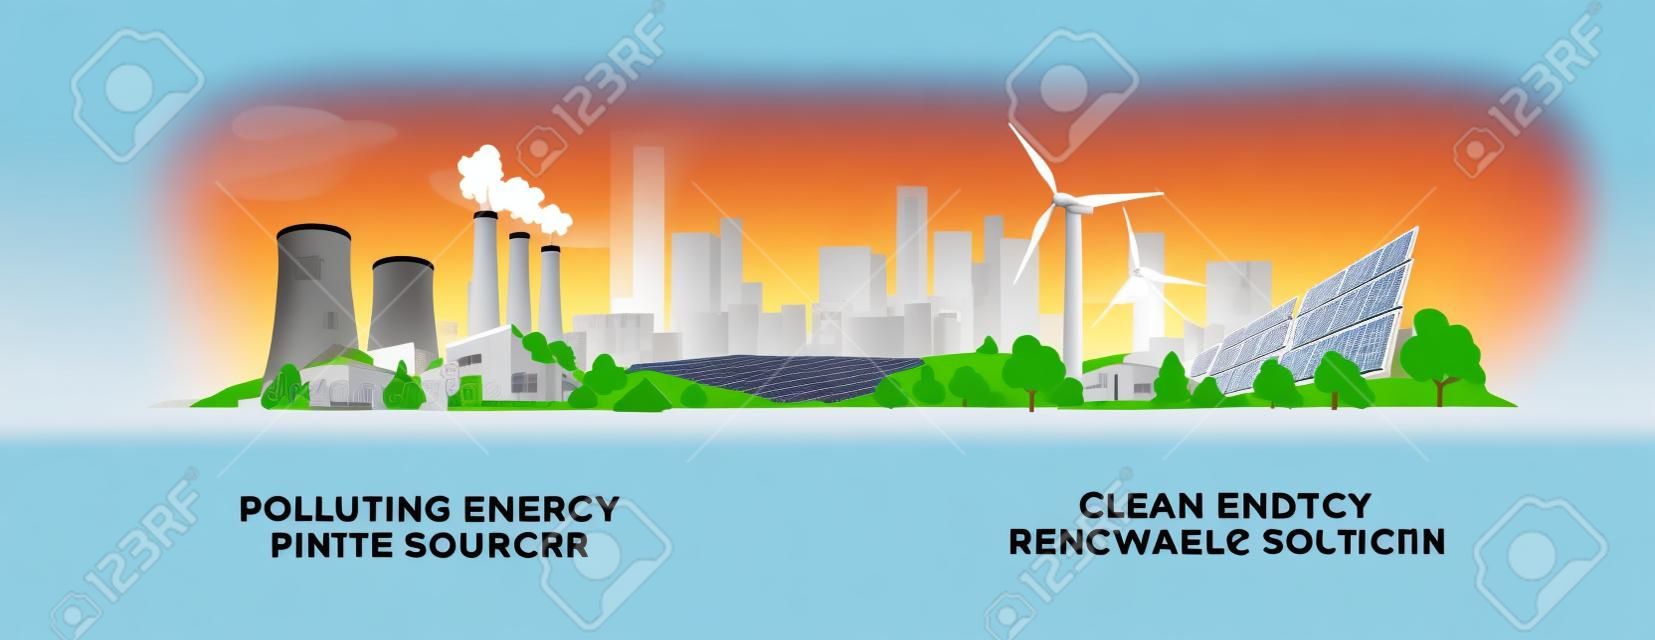 Ilustracja wektorowa pokazująca czystą i zanieczyszczającą produkcję energii elektrycznej. Zanieczyszczający węgiel kopalny i elektrownie jądrowe a czyste panele słoneczne i energia odnawialna turbin wiatrowych.